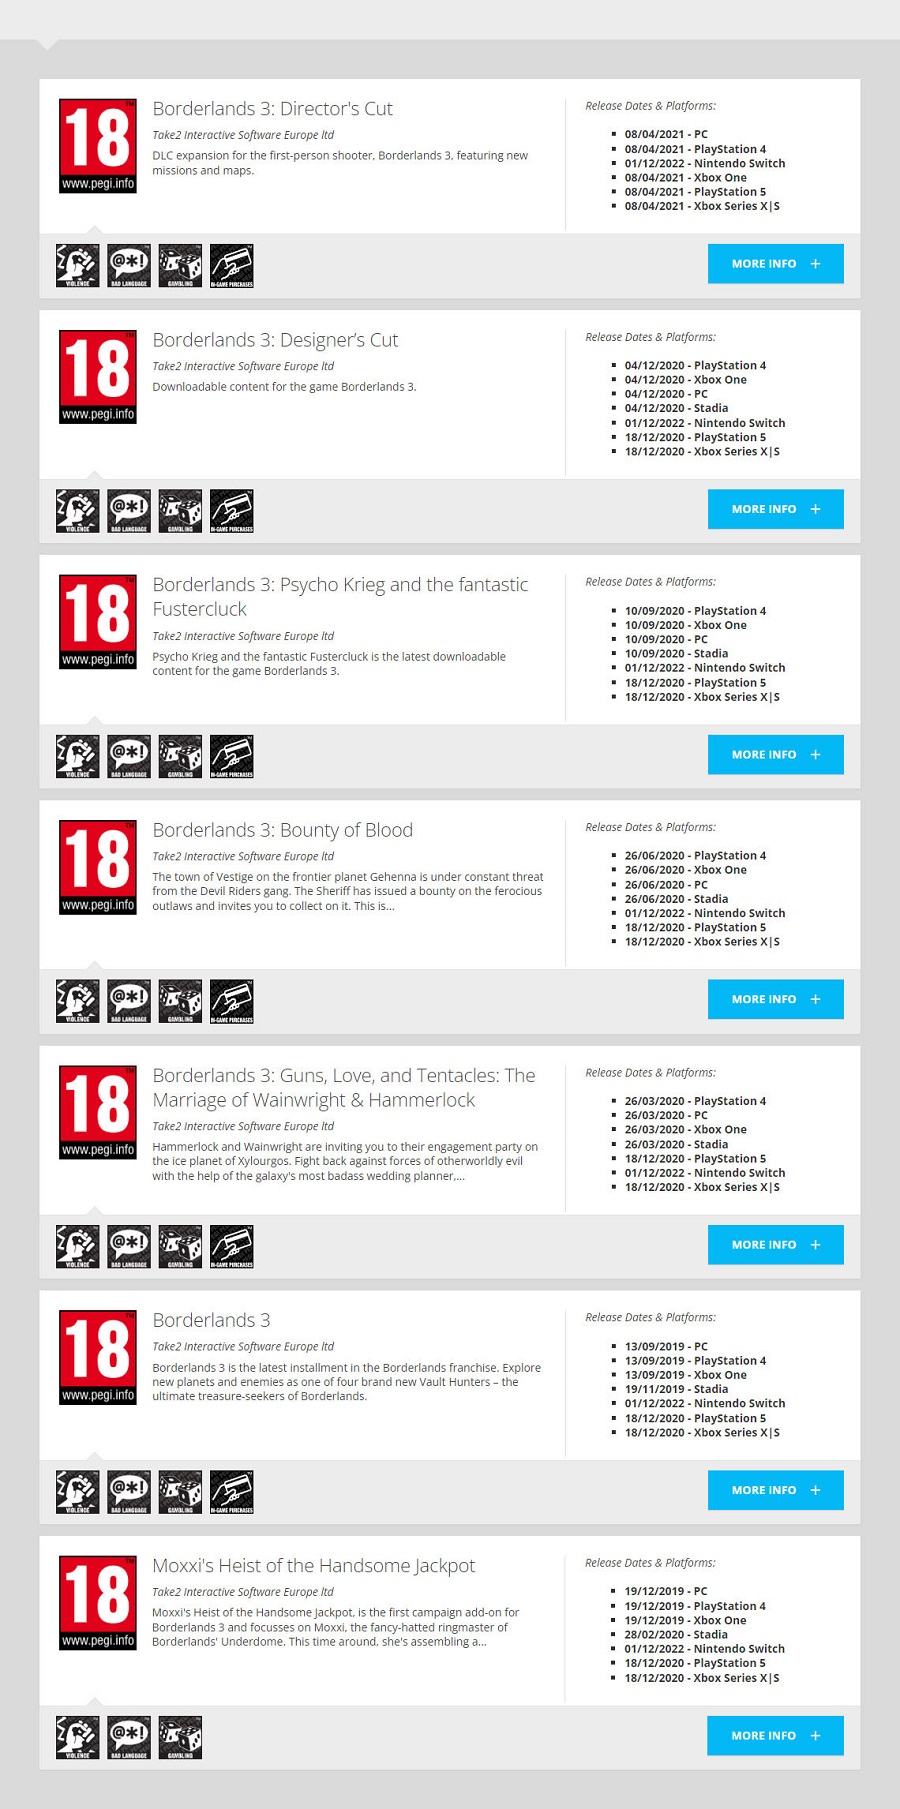 Скоро анонс? Версія Borderlands 3 для консолі Nintendo Switch отримала віковий рейтинг від Європейської комісії PEGI-2